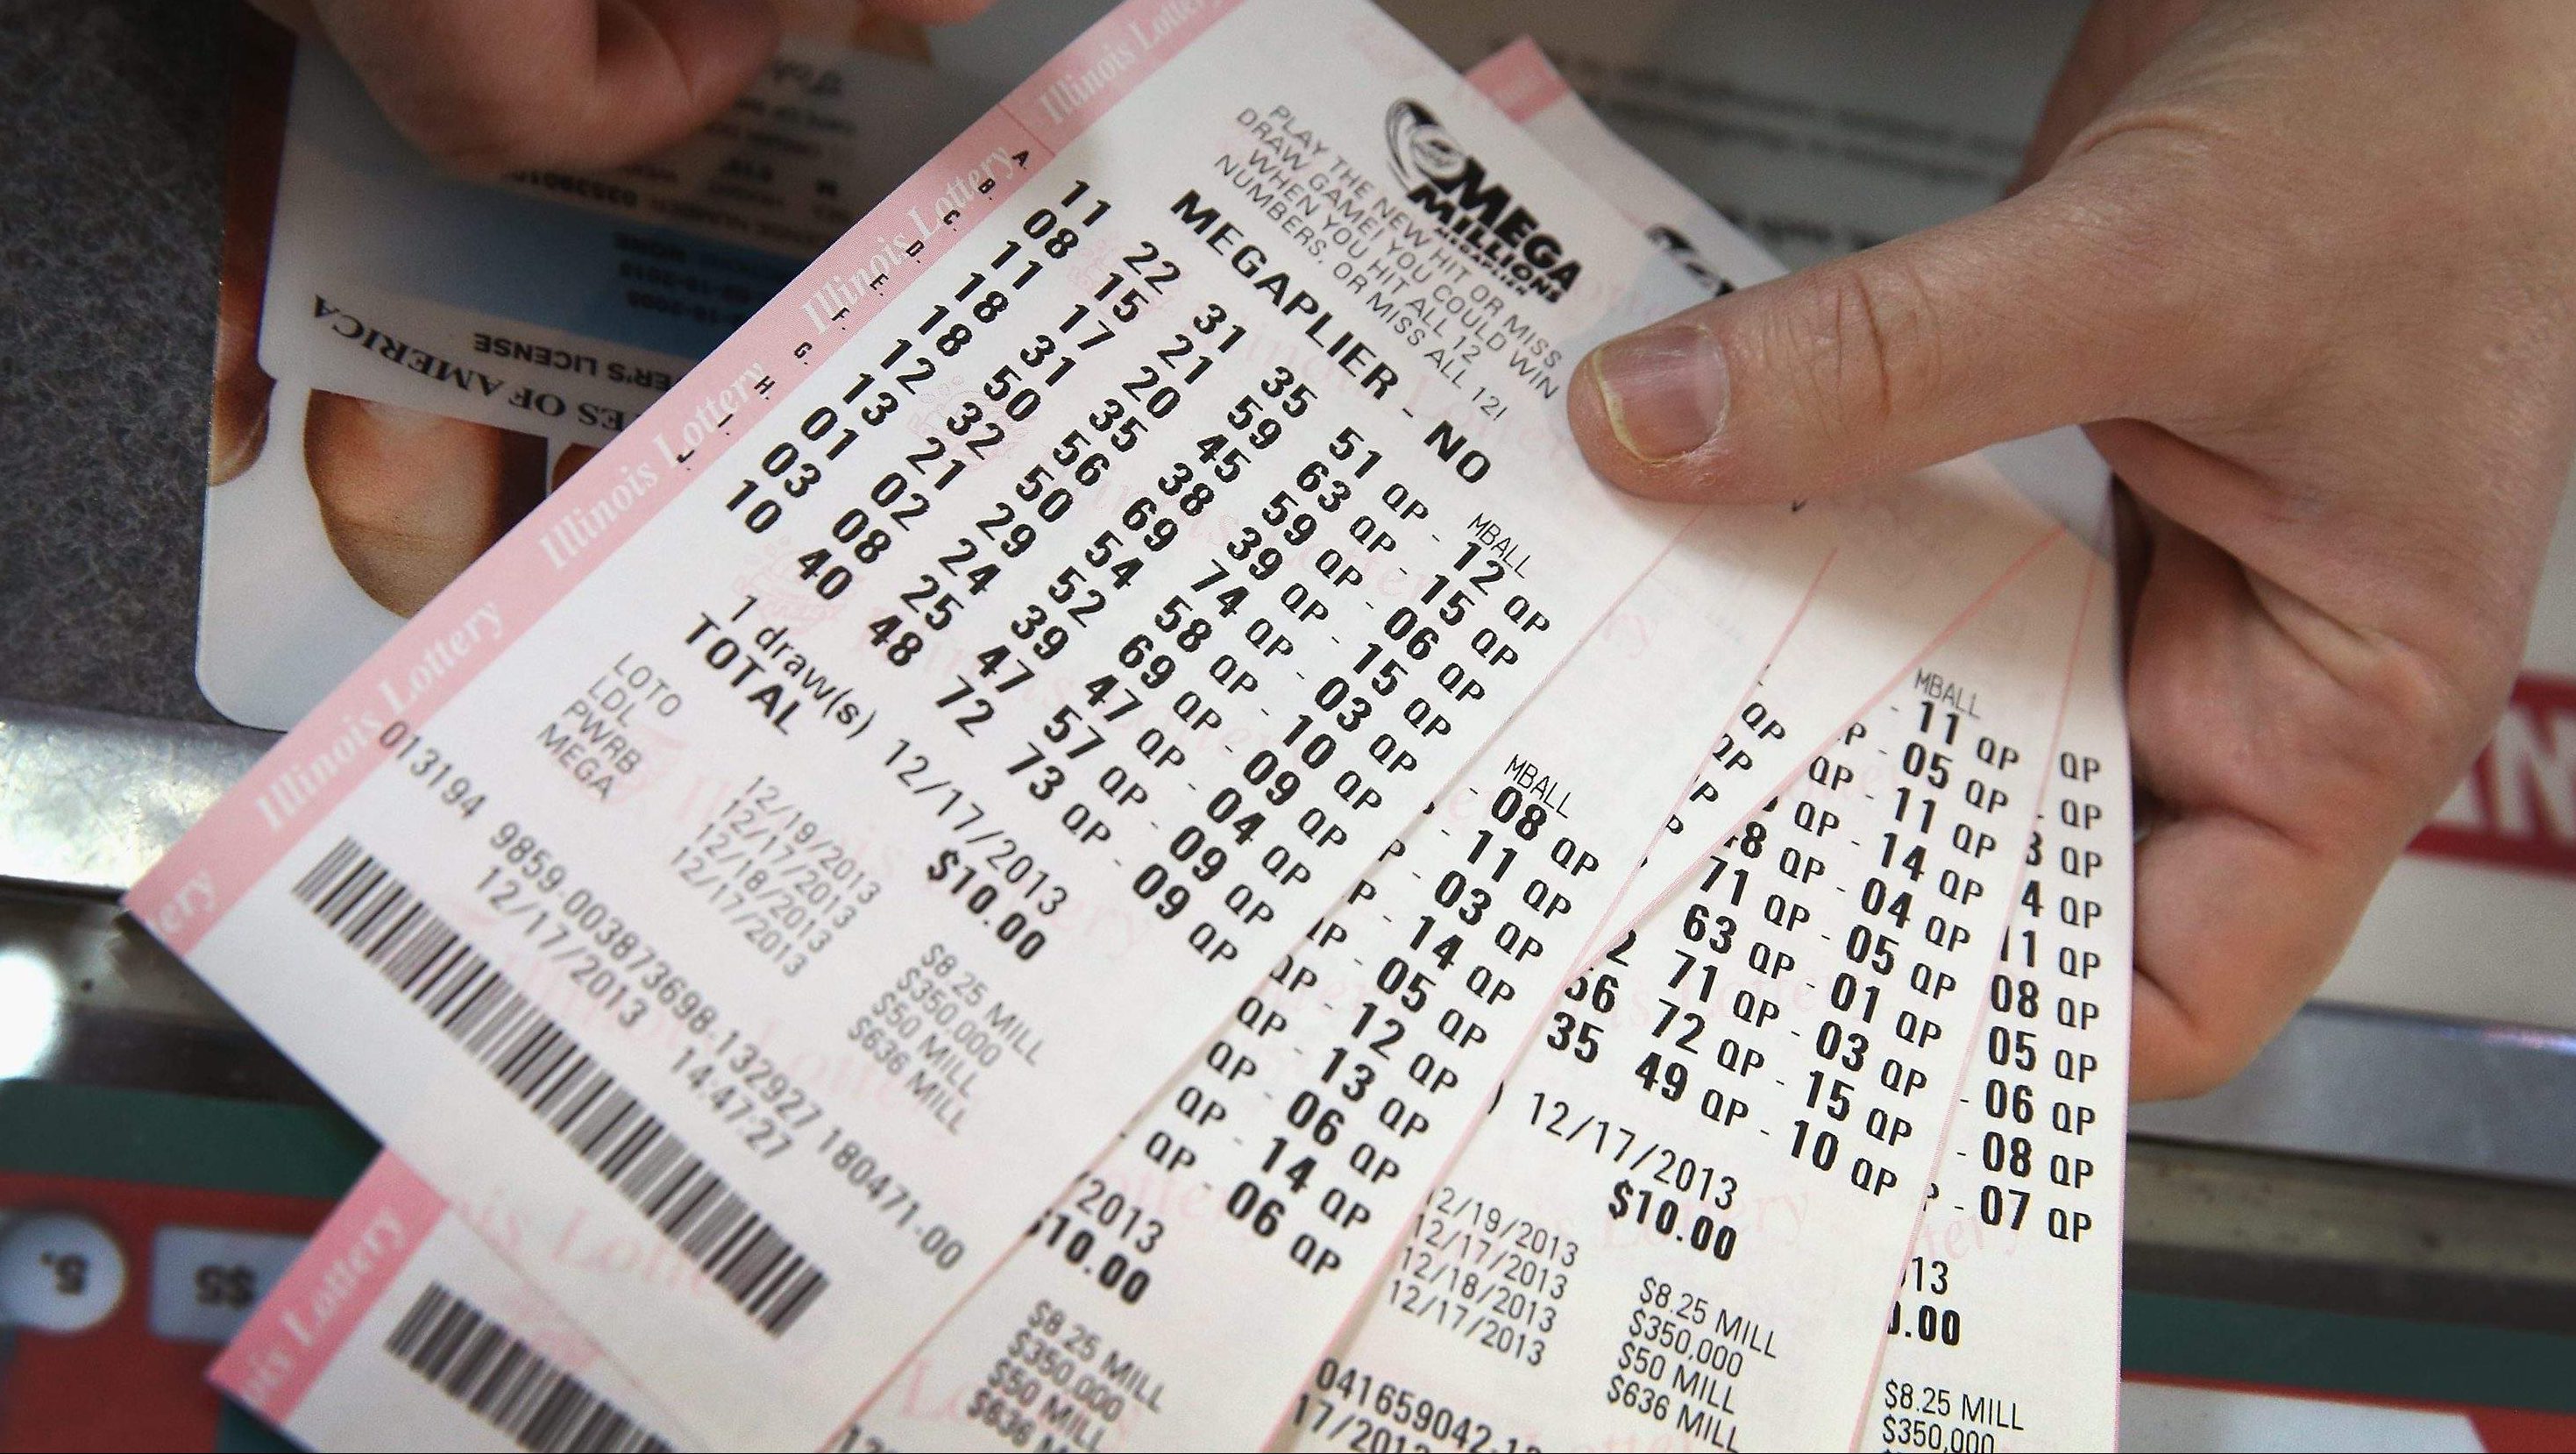 cutoff to buy lotto tickets